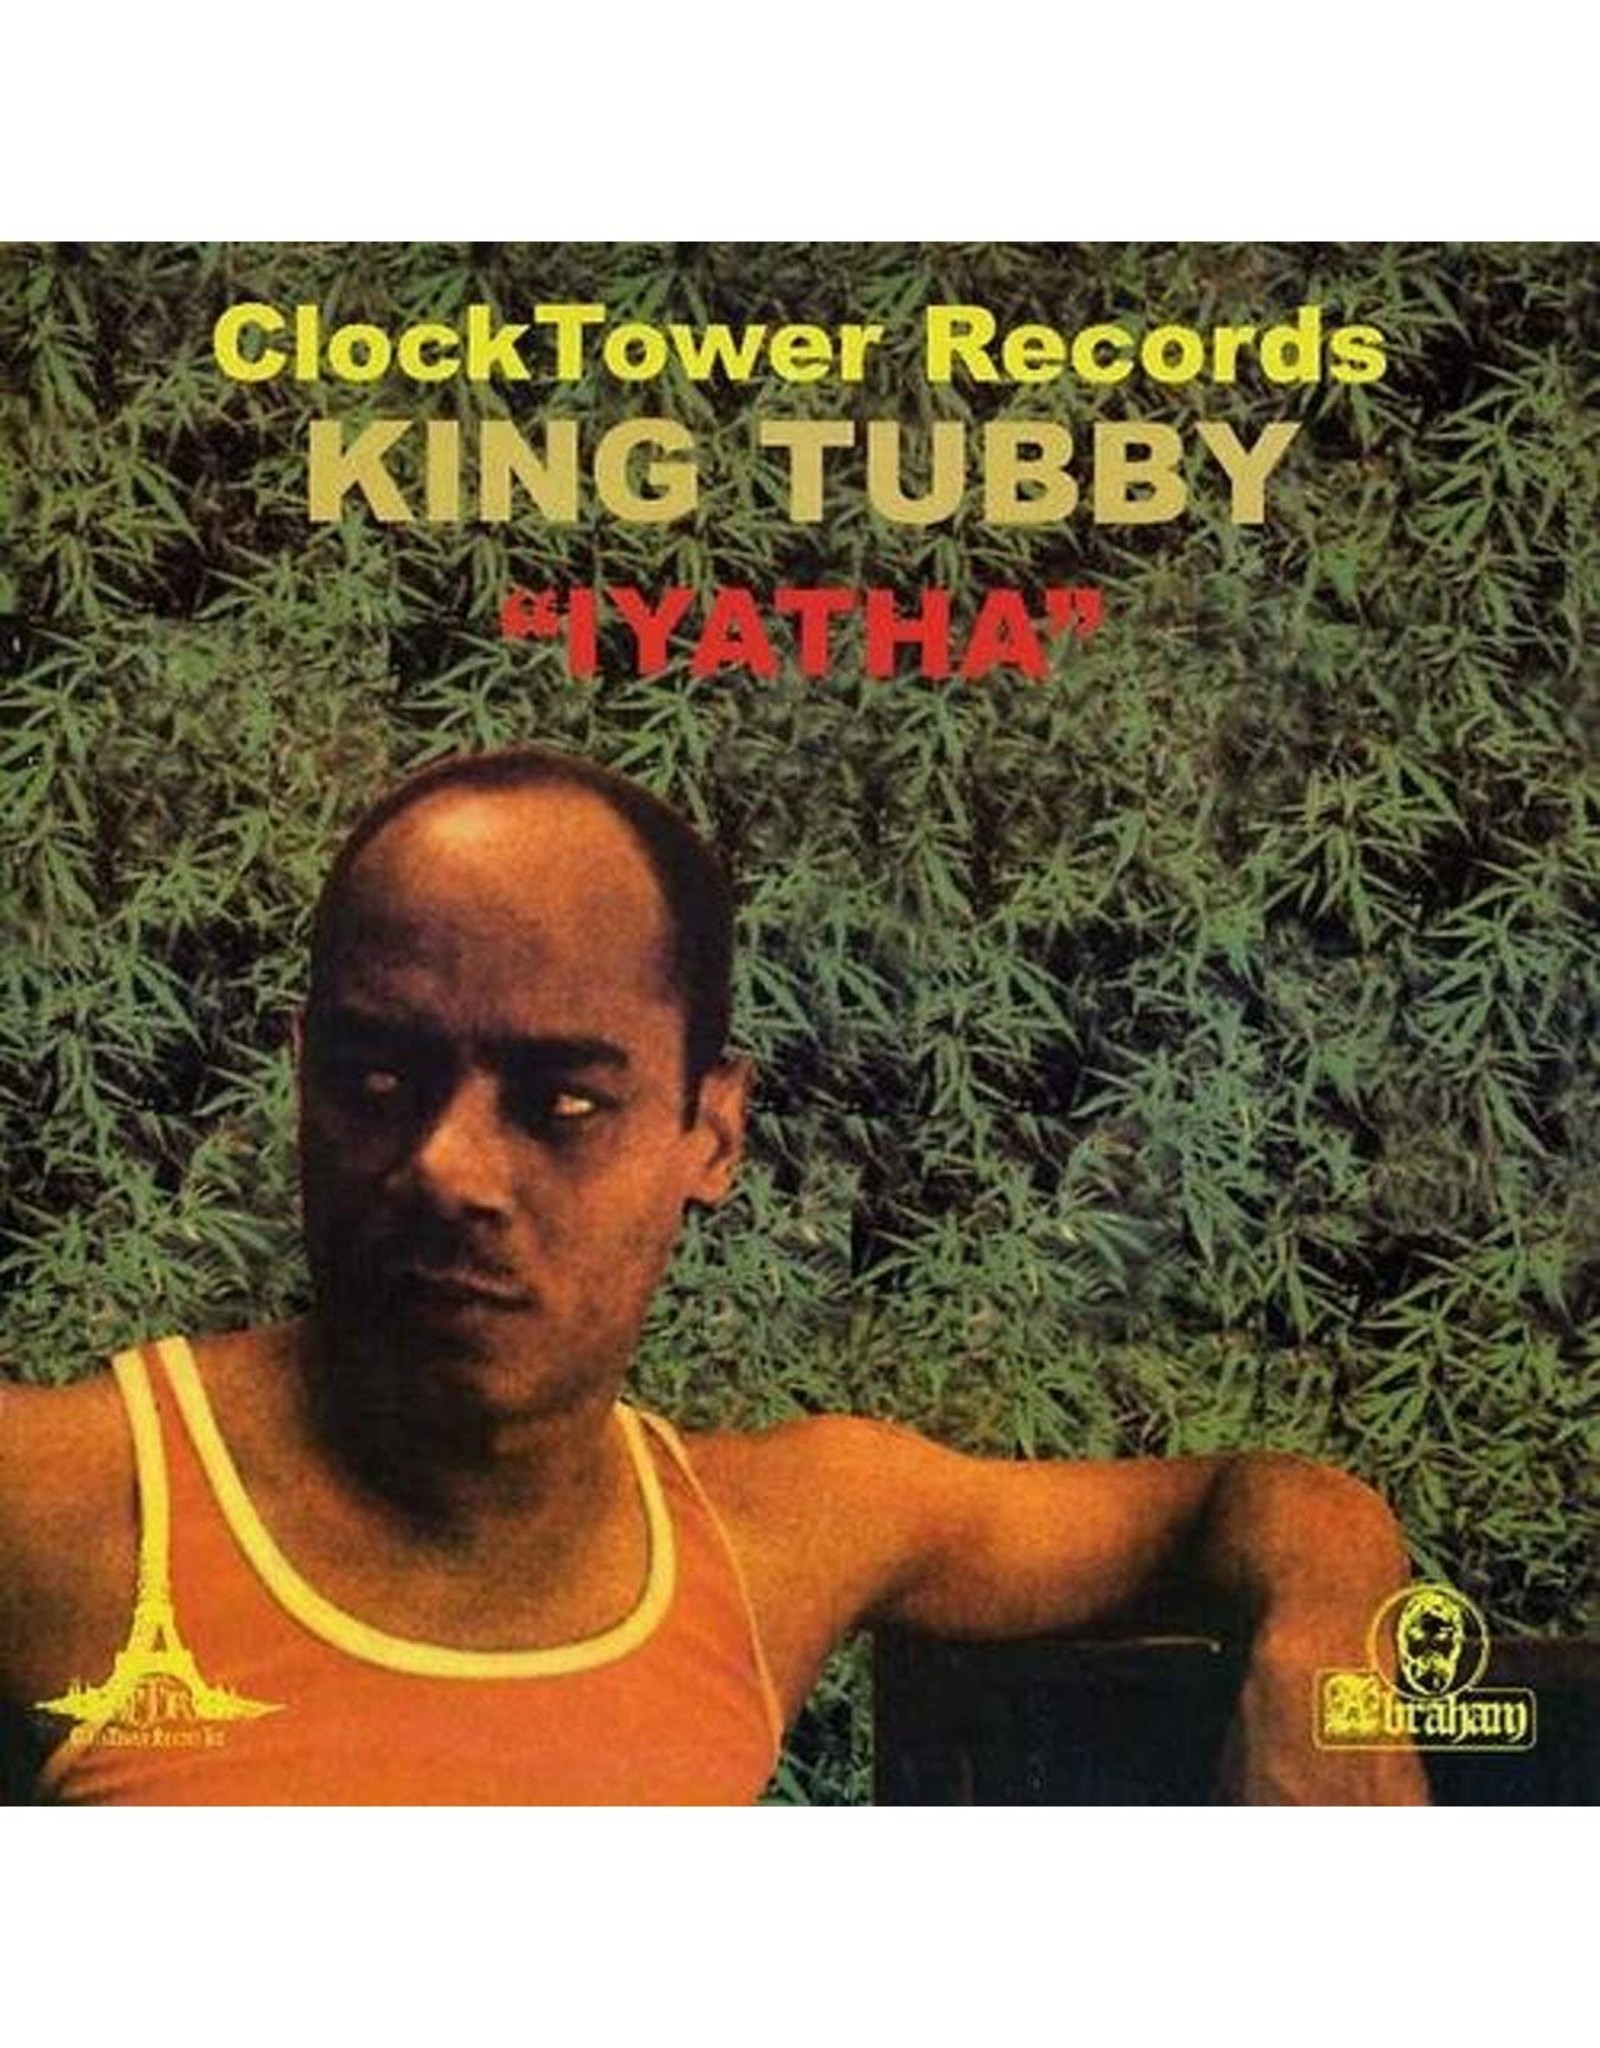 King Tubby - Iyatha LP